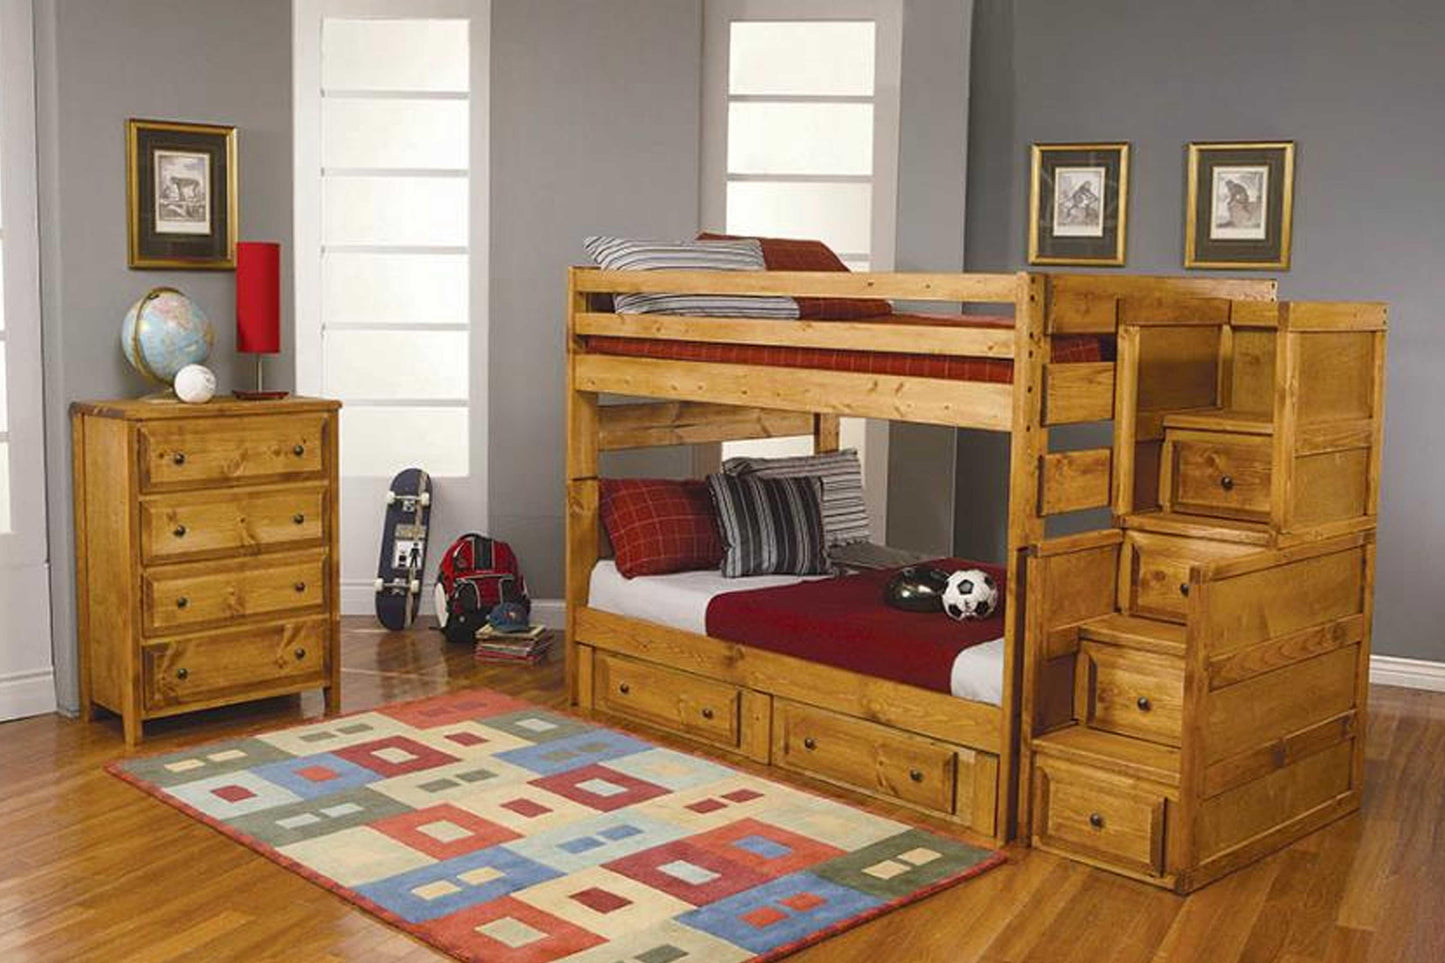 TWIN / TWIN BUNK BED MODEL 460243 - Venini Furniture 